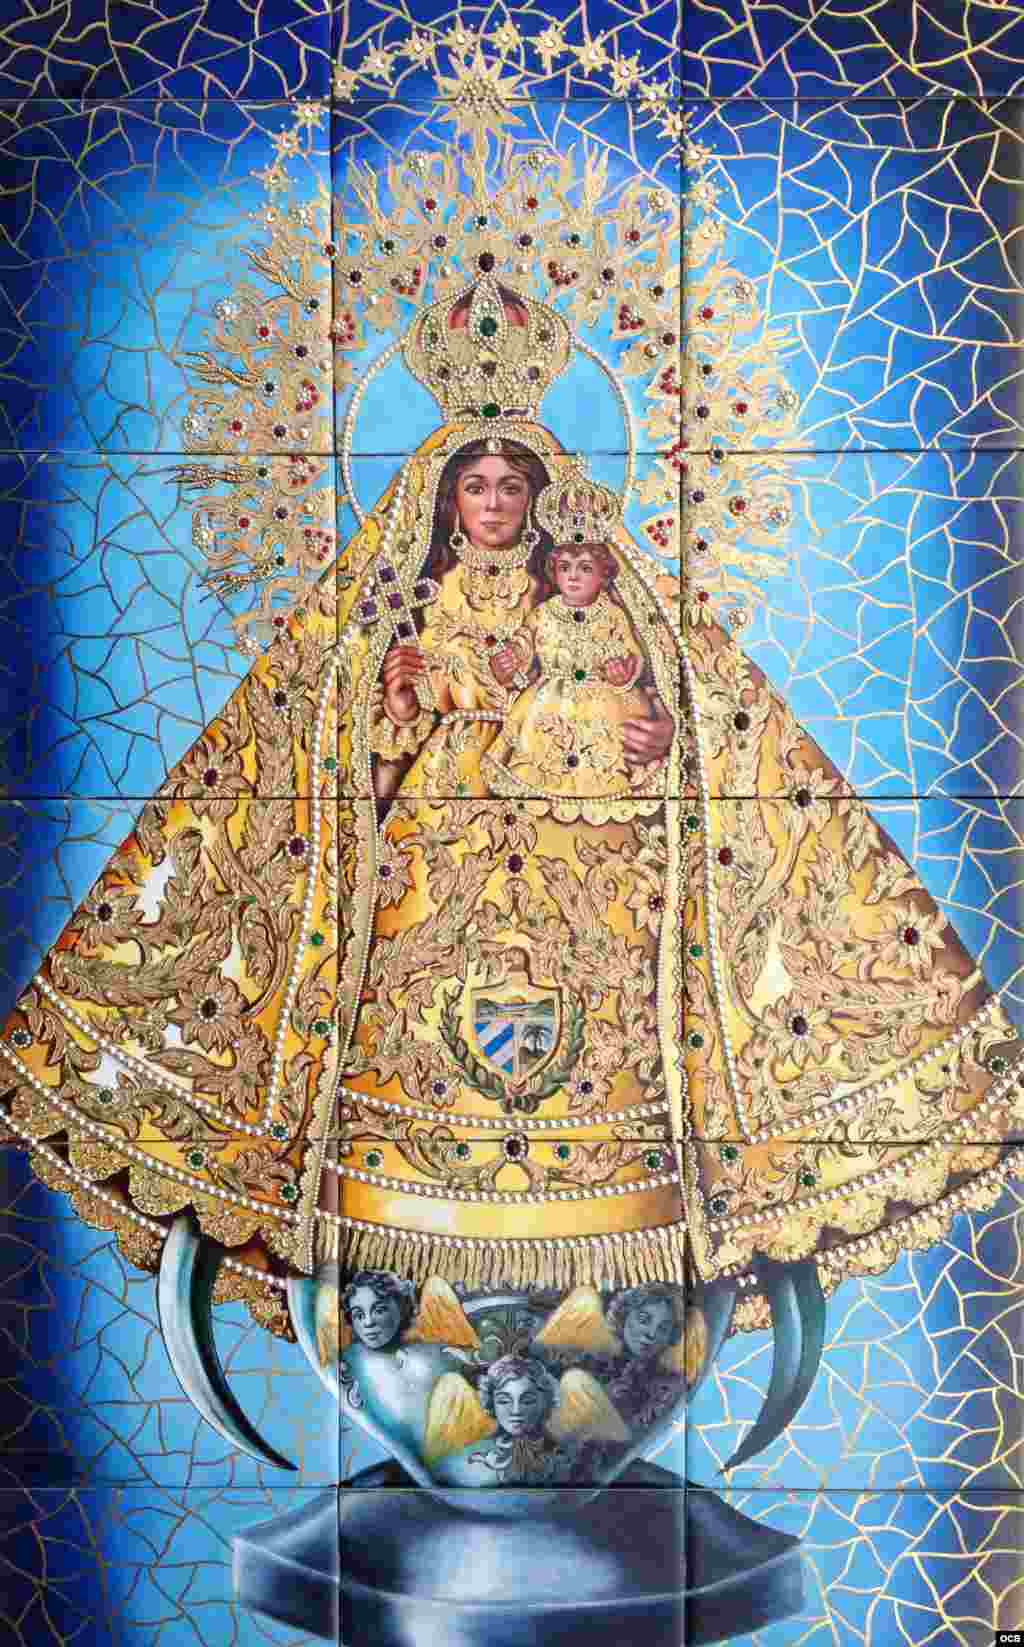 6- Virgen de la Caridad de la colección privada de Beatriz Ramírez (24x32 pulgadas, cerámica).